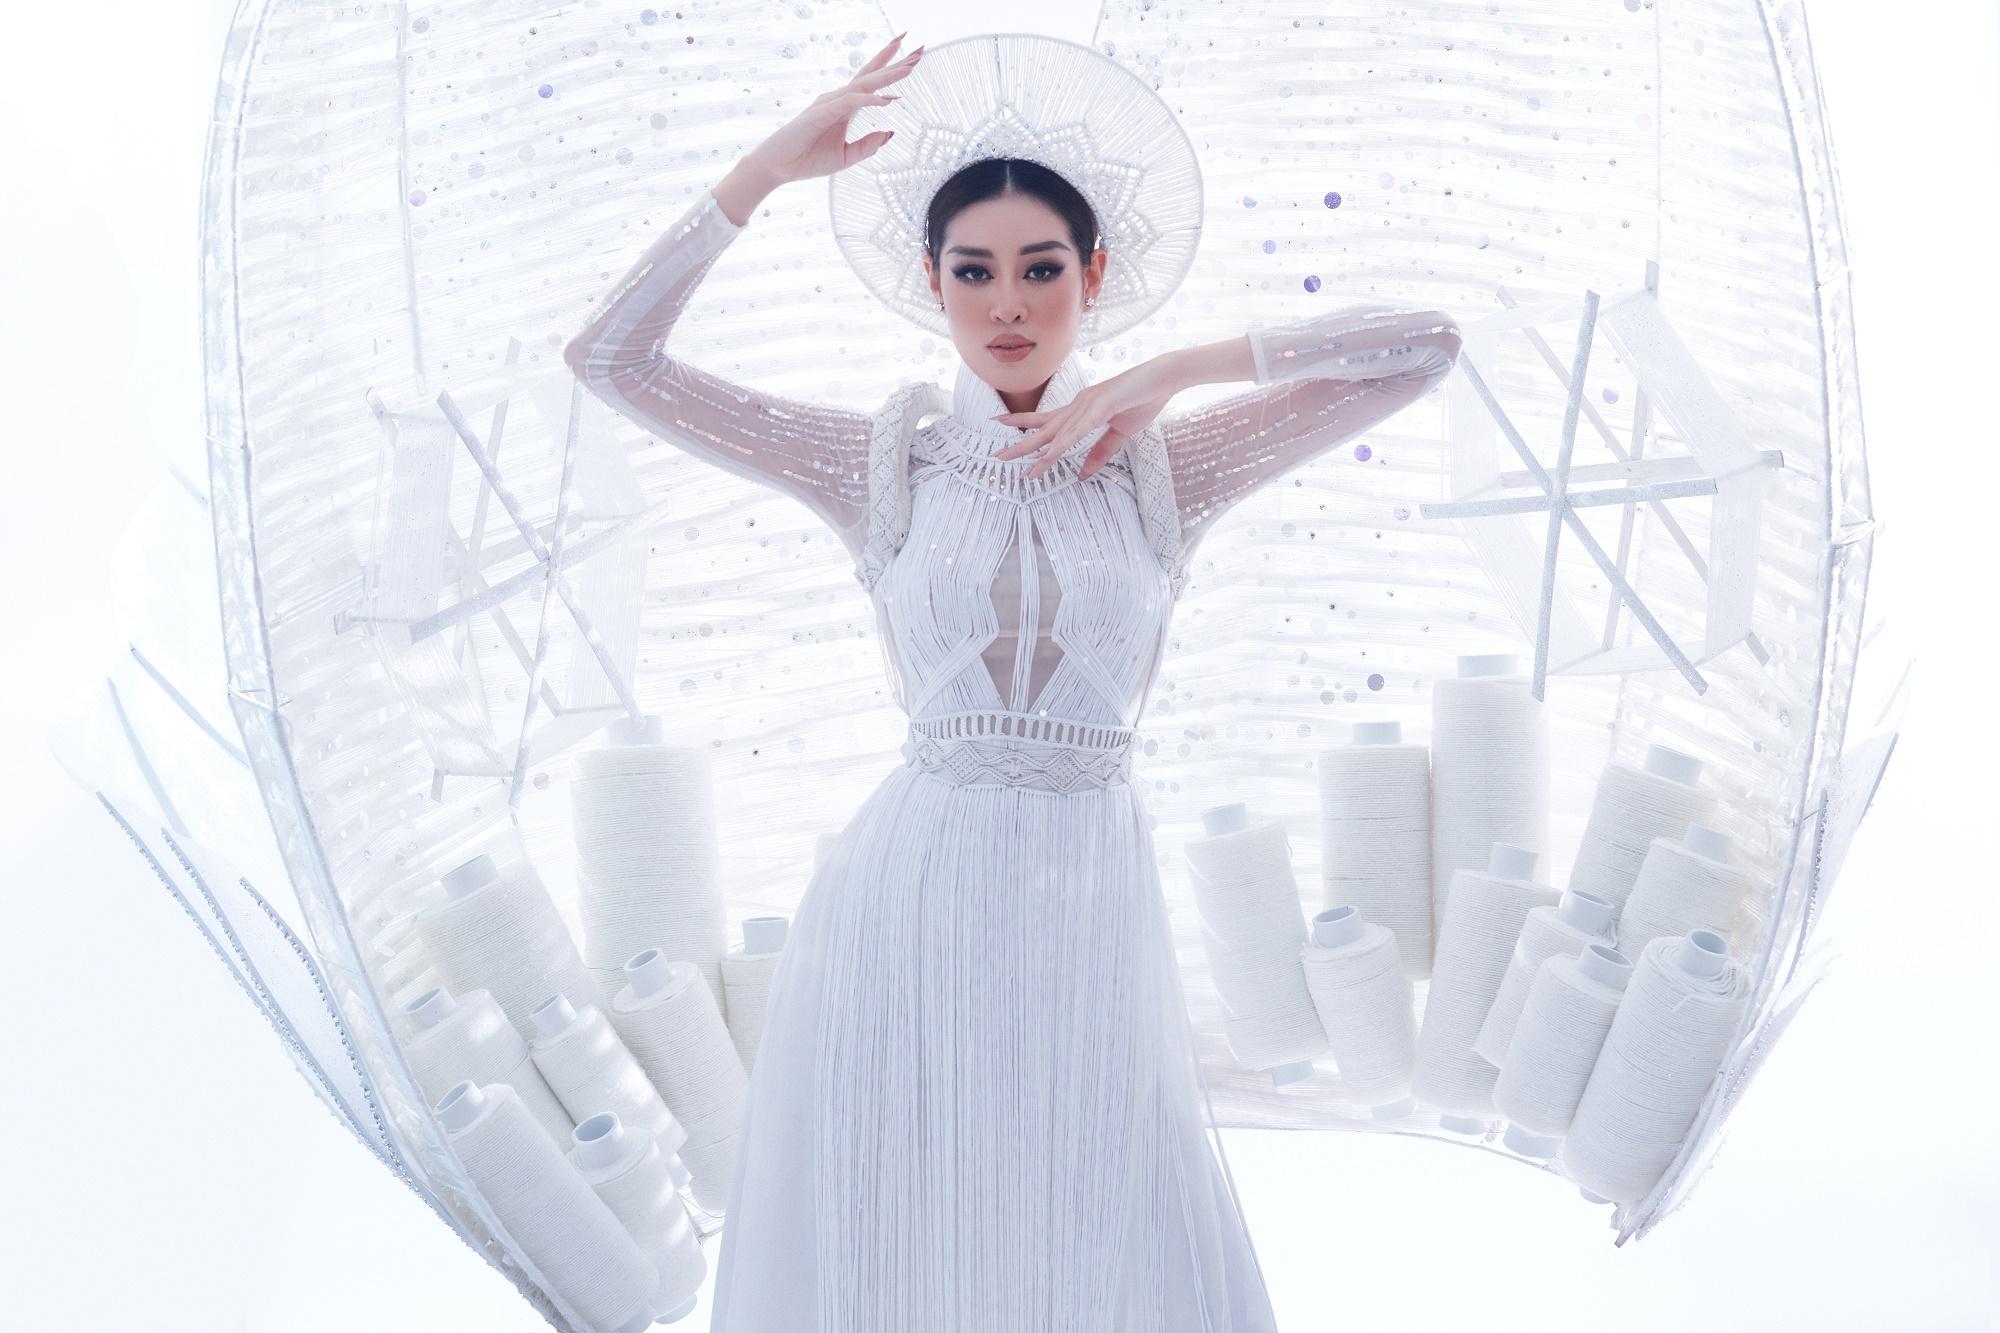 Hoa hậu Khánh Vân trình diễn 'Kén Em' trong phần thi National Costum